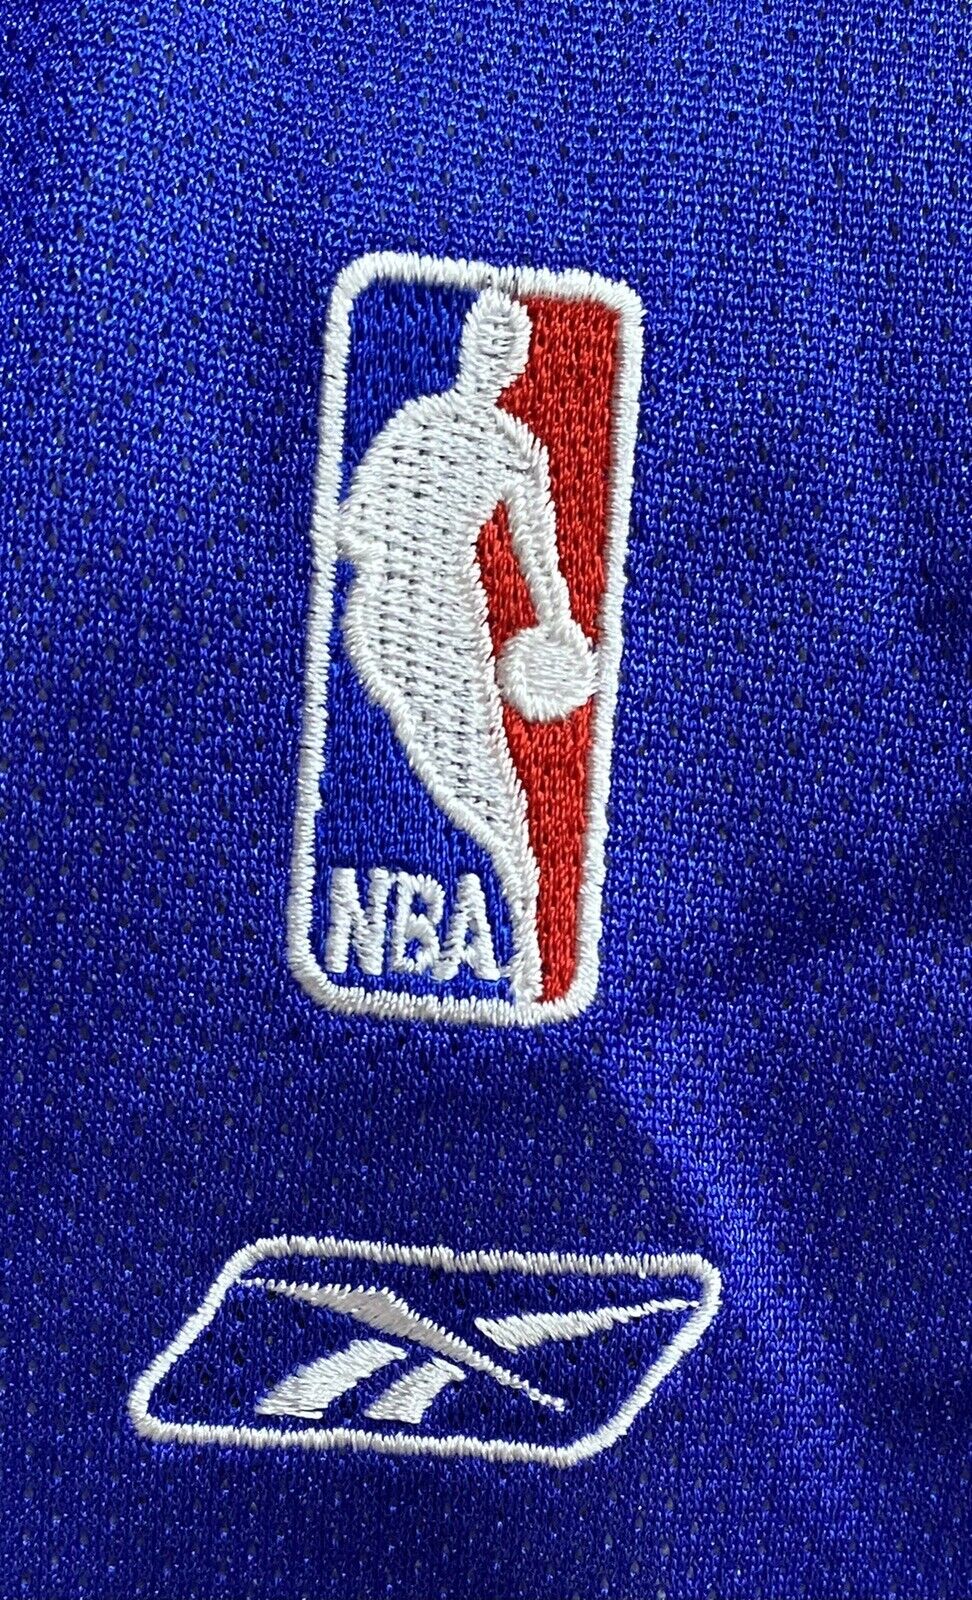 Stephon Marbury New York Knicks Reebok Official Licensed NBA